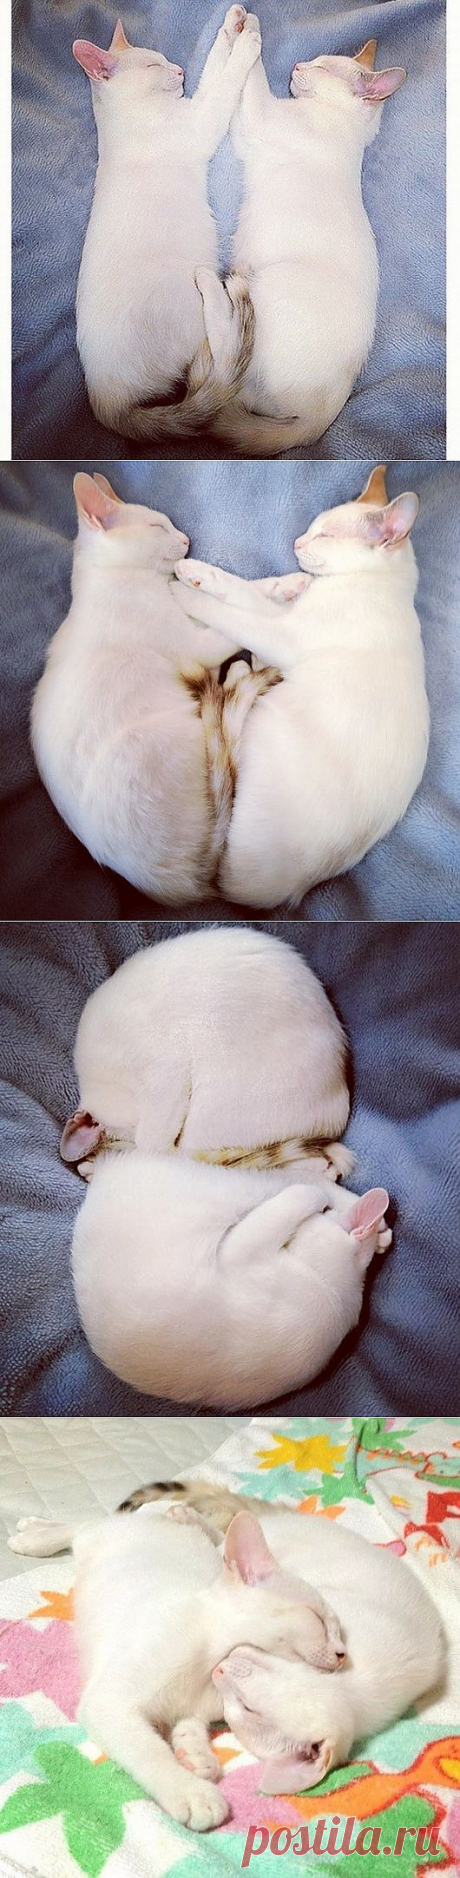 Удивительные кошки-близнецы Мерри и Пиппин всегда спят в одинаковых позах | Ультрамарин